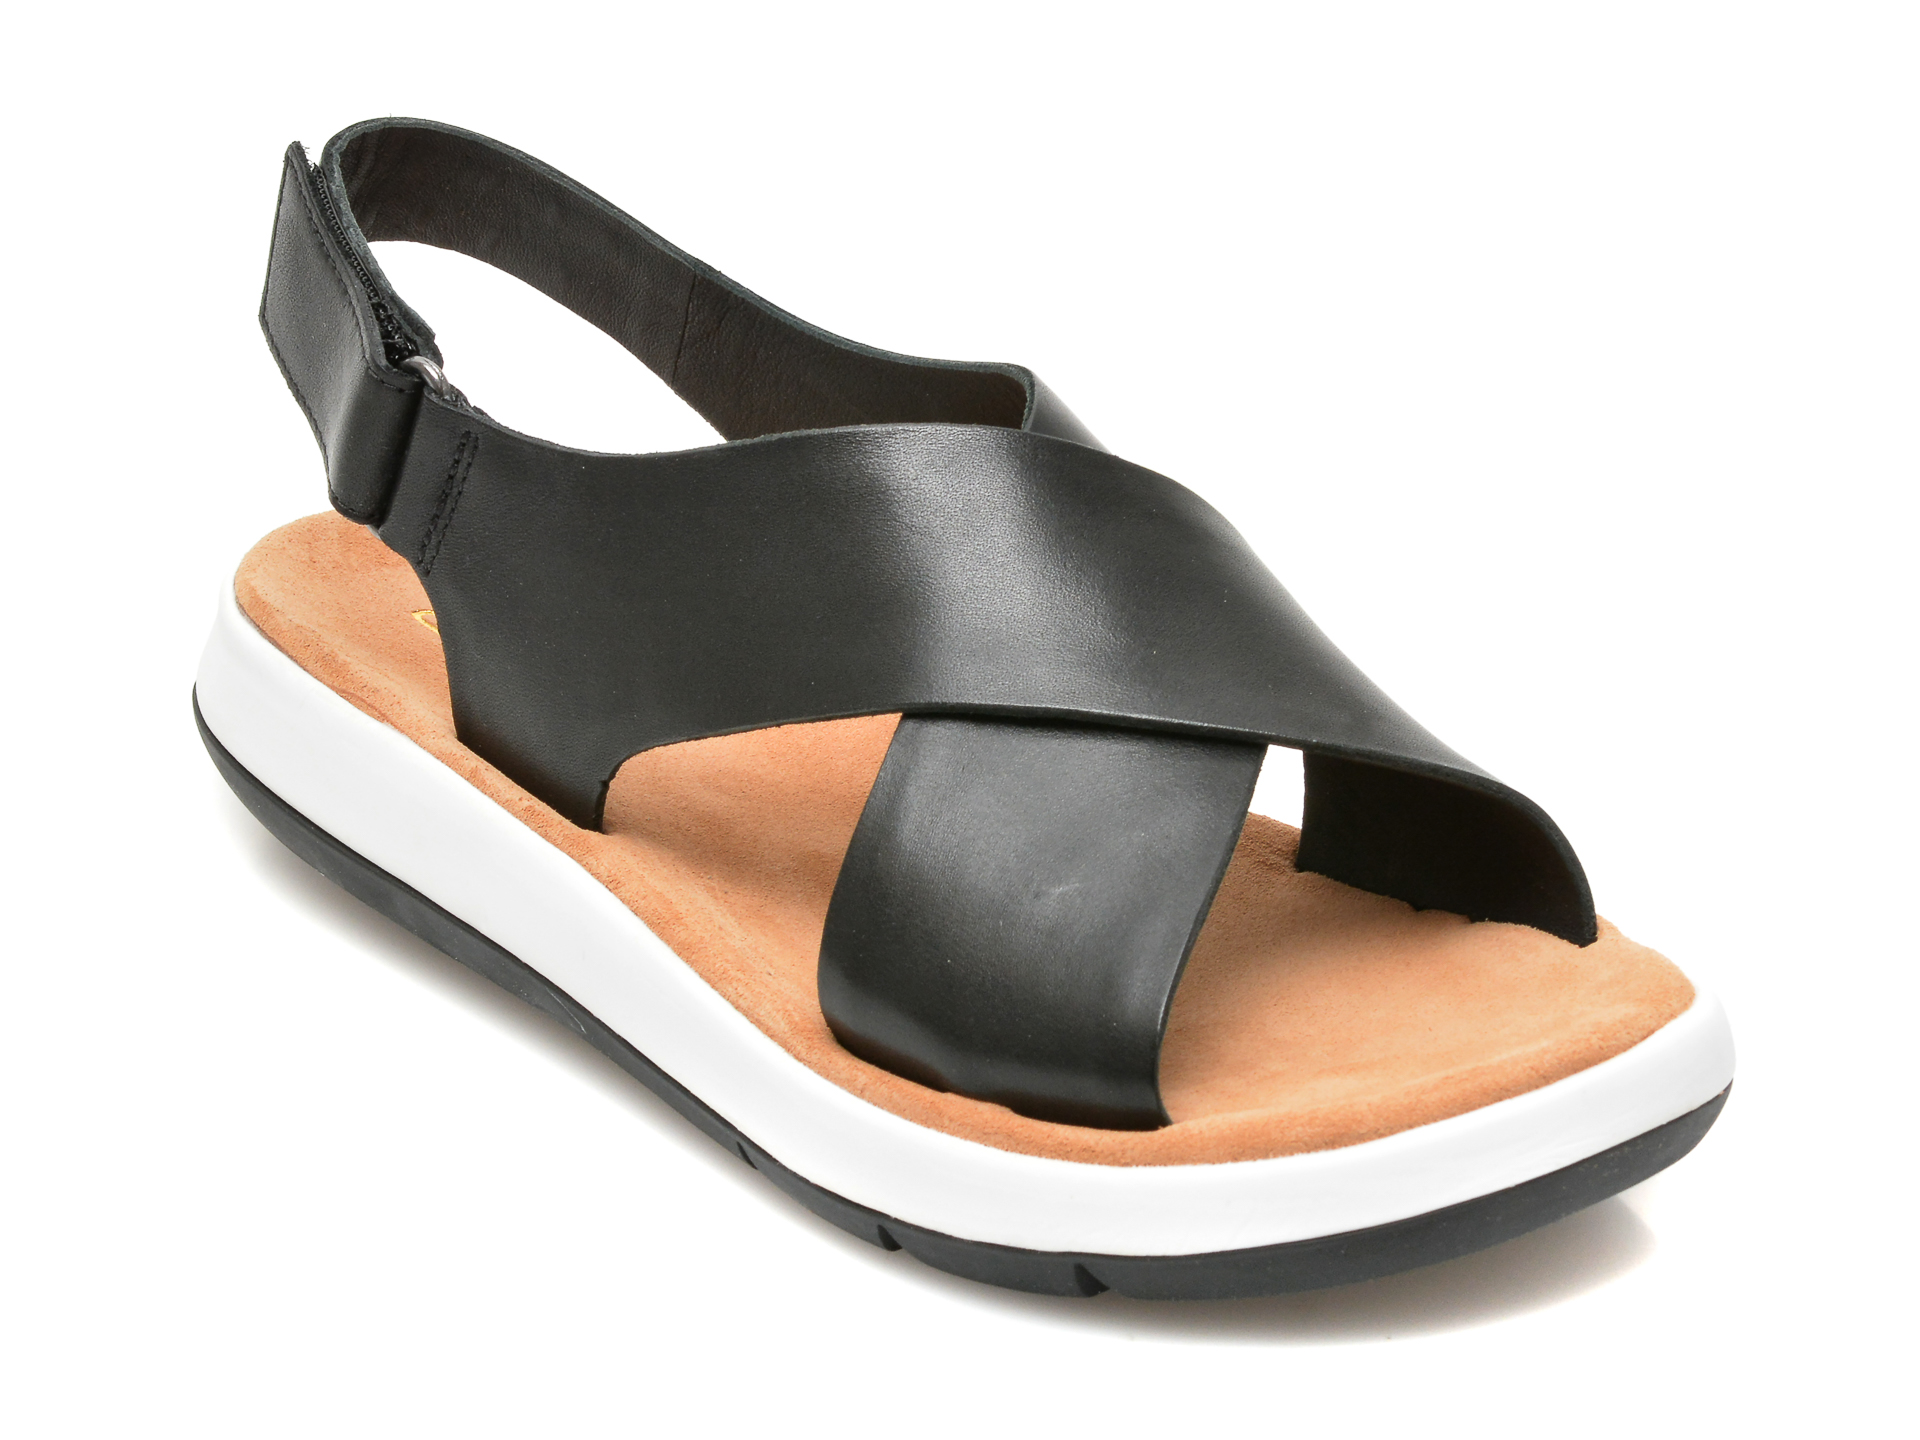 Sandale CLARKS negre, JEMSA CROSS, din piele naturala Clarks